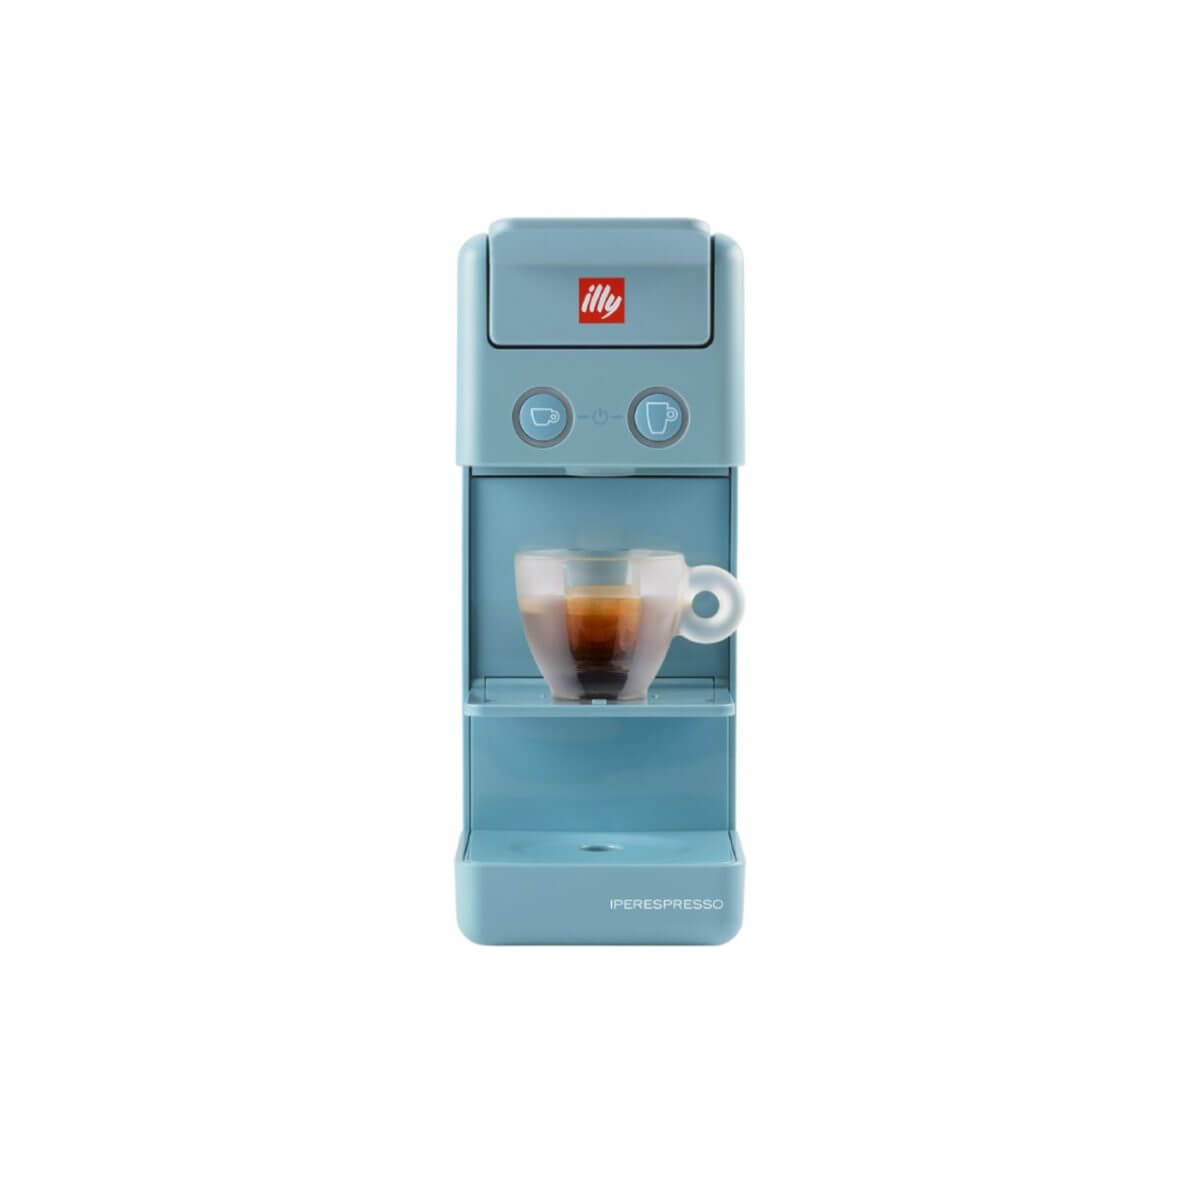 Y3.2 Espresso & Coffee – Iperespresso koffiemachine